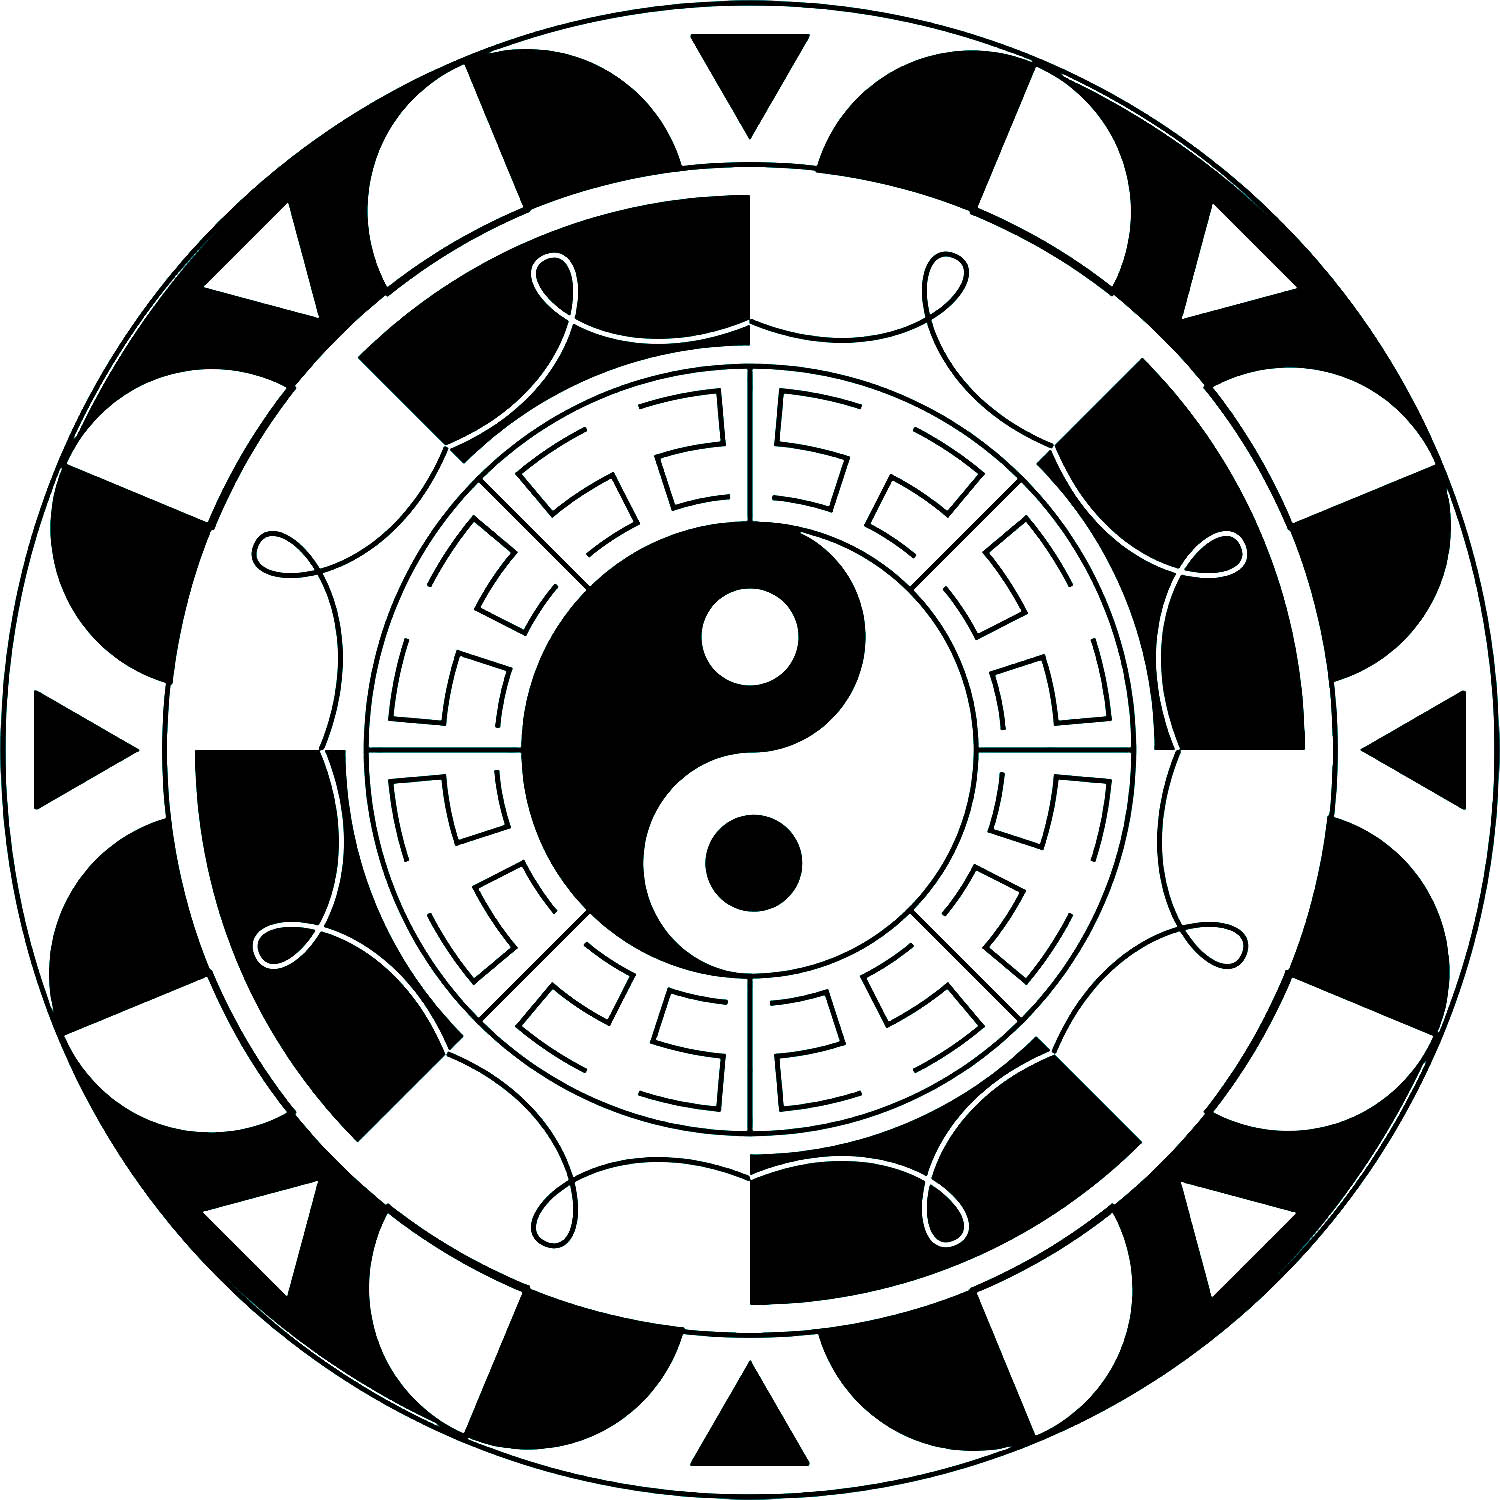 Semplice mandala con simbolo Yin & Yang al centro ed elementi in bianco e nero